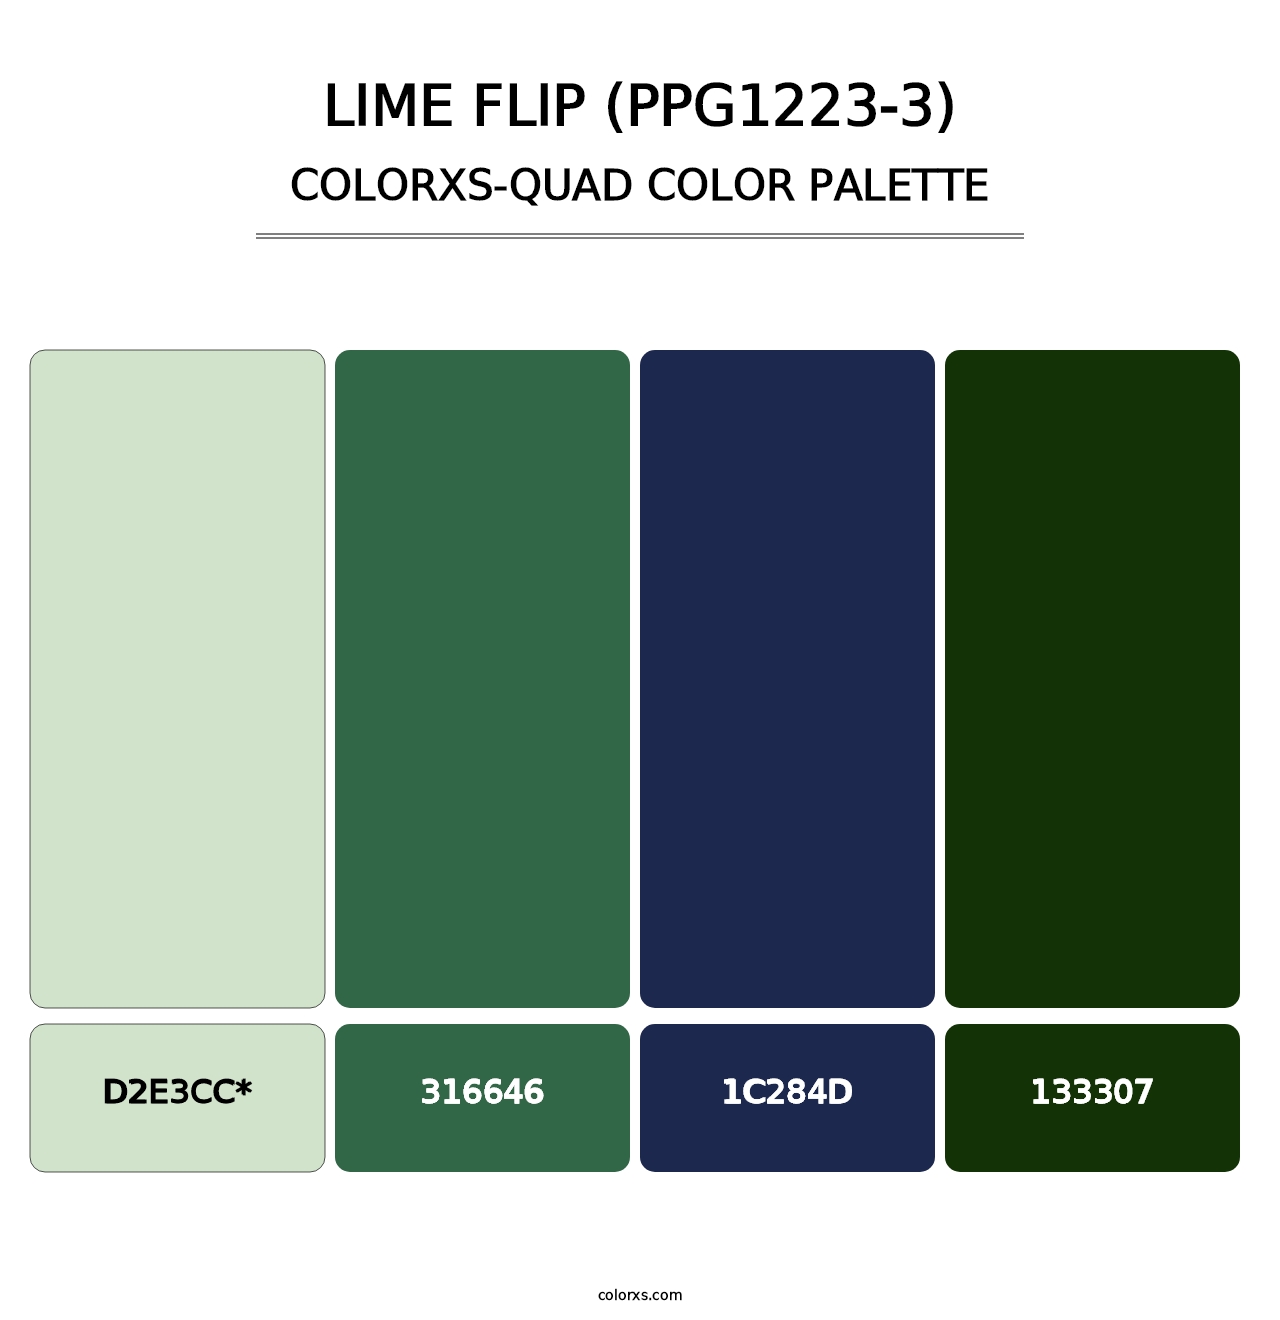 Lime Flip (PPG1223-3) - Colorxs Quad Palette